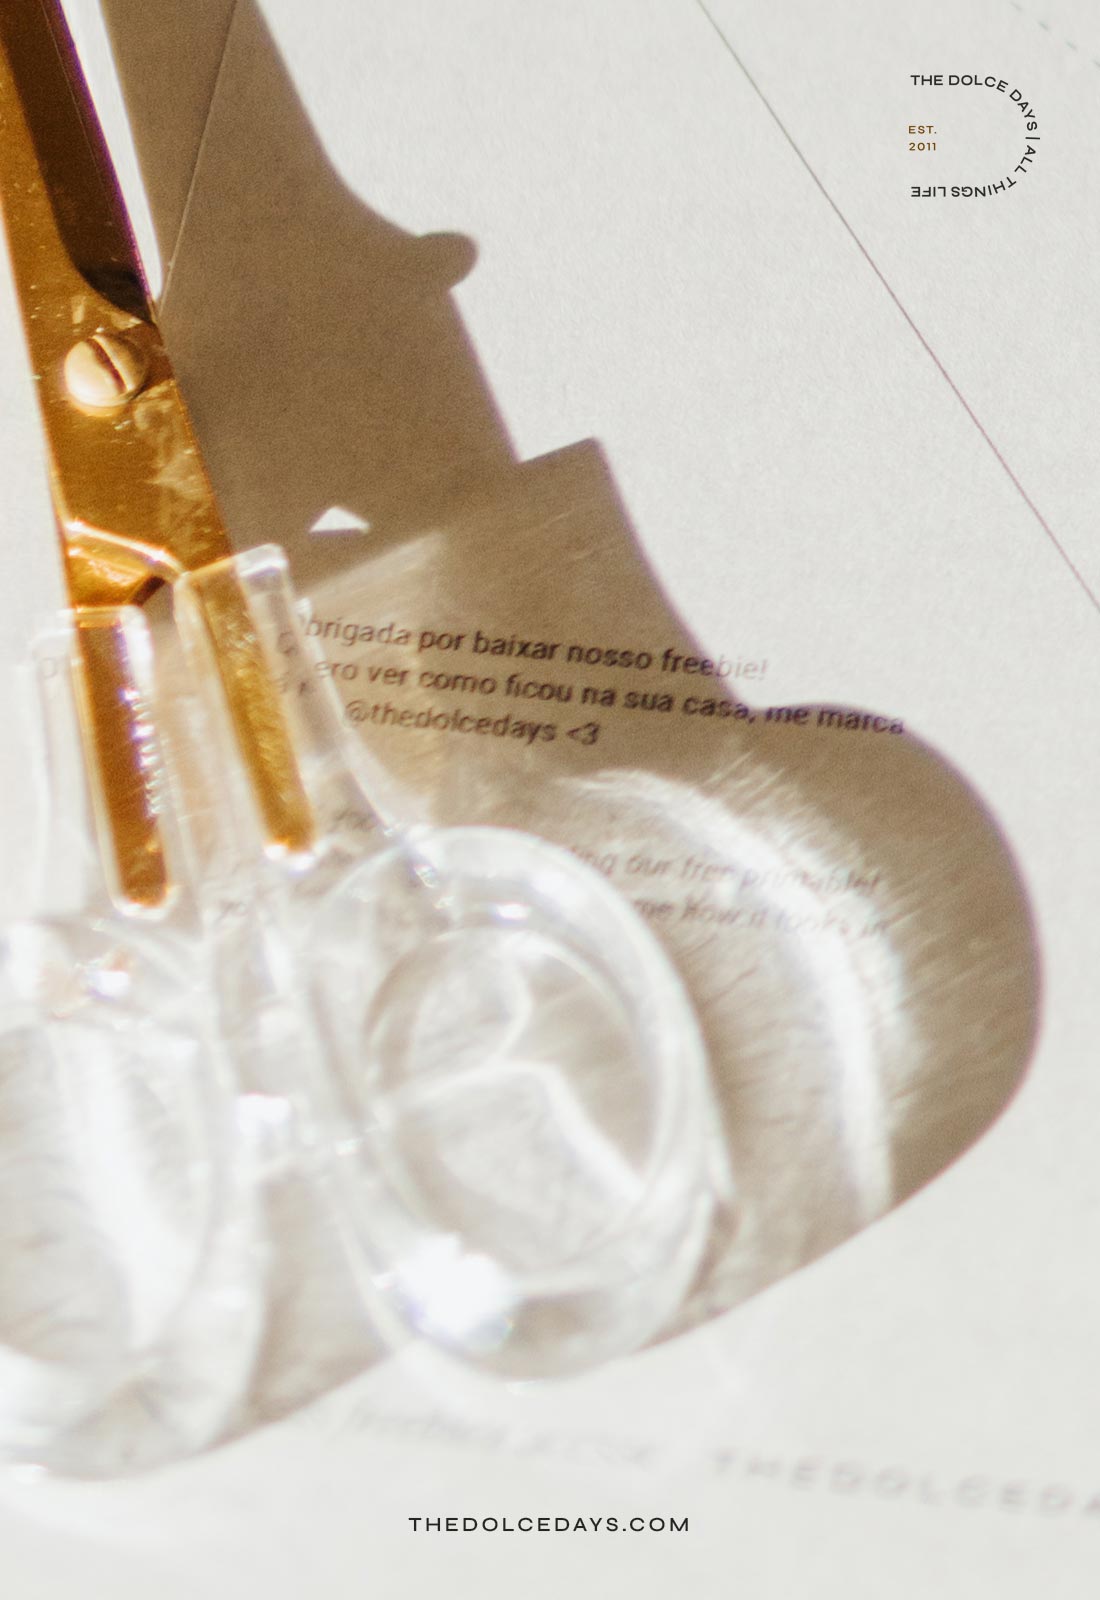 Detalhe tesoura dourada com cabo transparente.